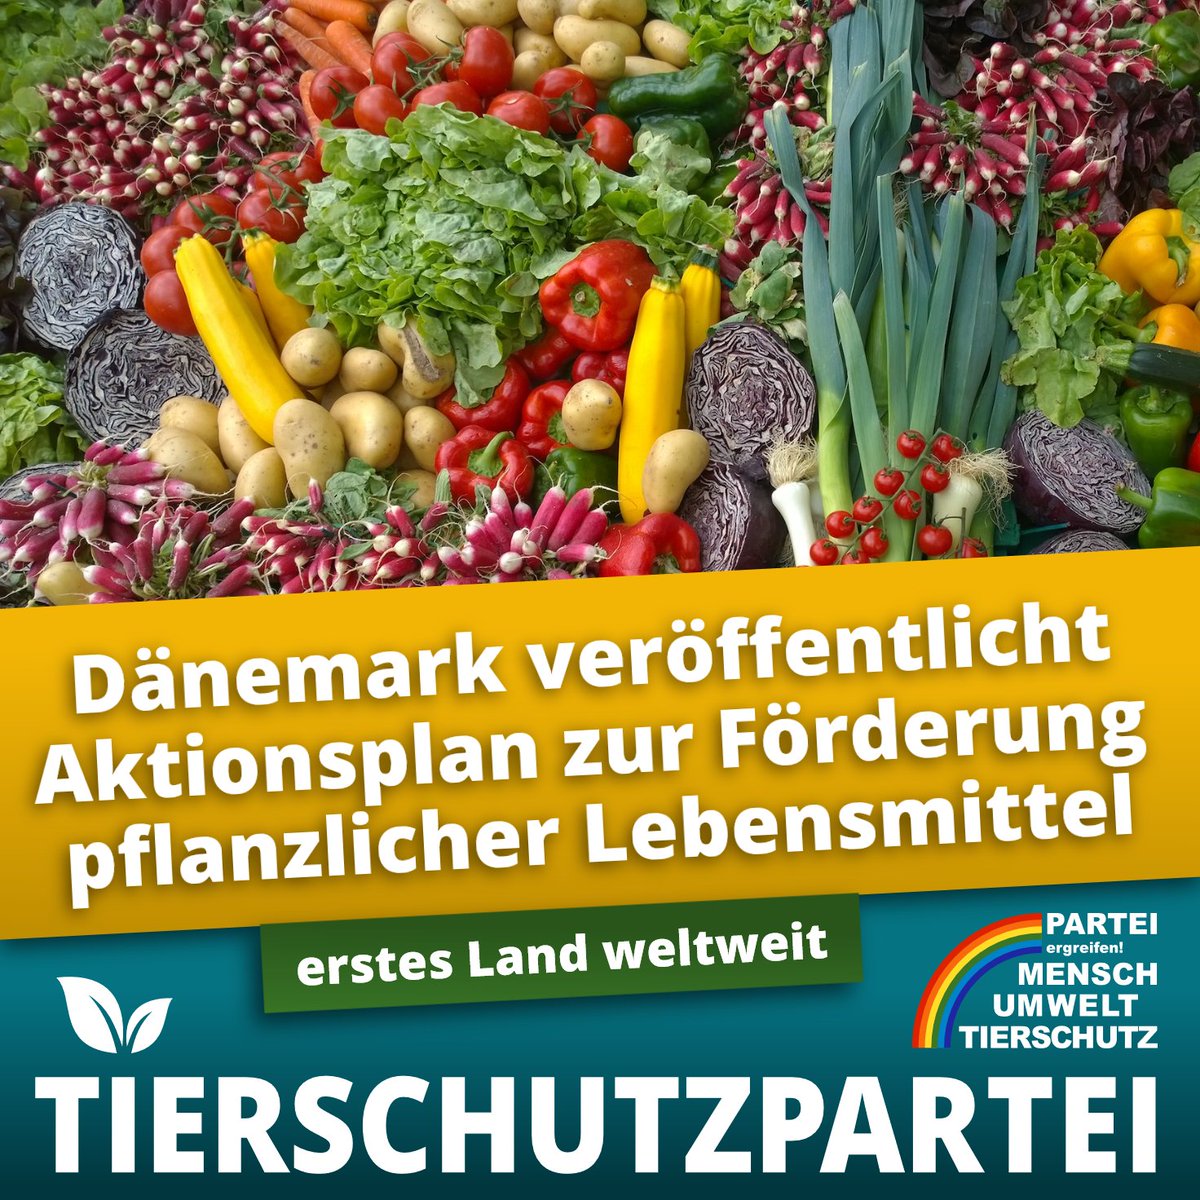 Meilenstein der Ernährungswende: Als erstes Land weltweit hat #Dänemark einen Aktionsplan entwickelt, der die Produktion und den Konsum pflanzlicher Lebensmittel vorantreiben soll. Eine wegweisende Entwicklung, die Deutschland sich zum Vorbild nehmen sollte! #GoVegan